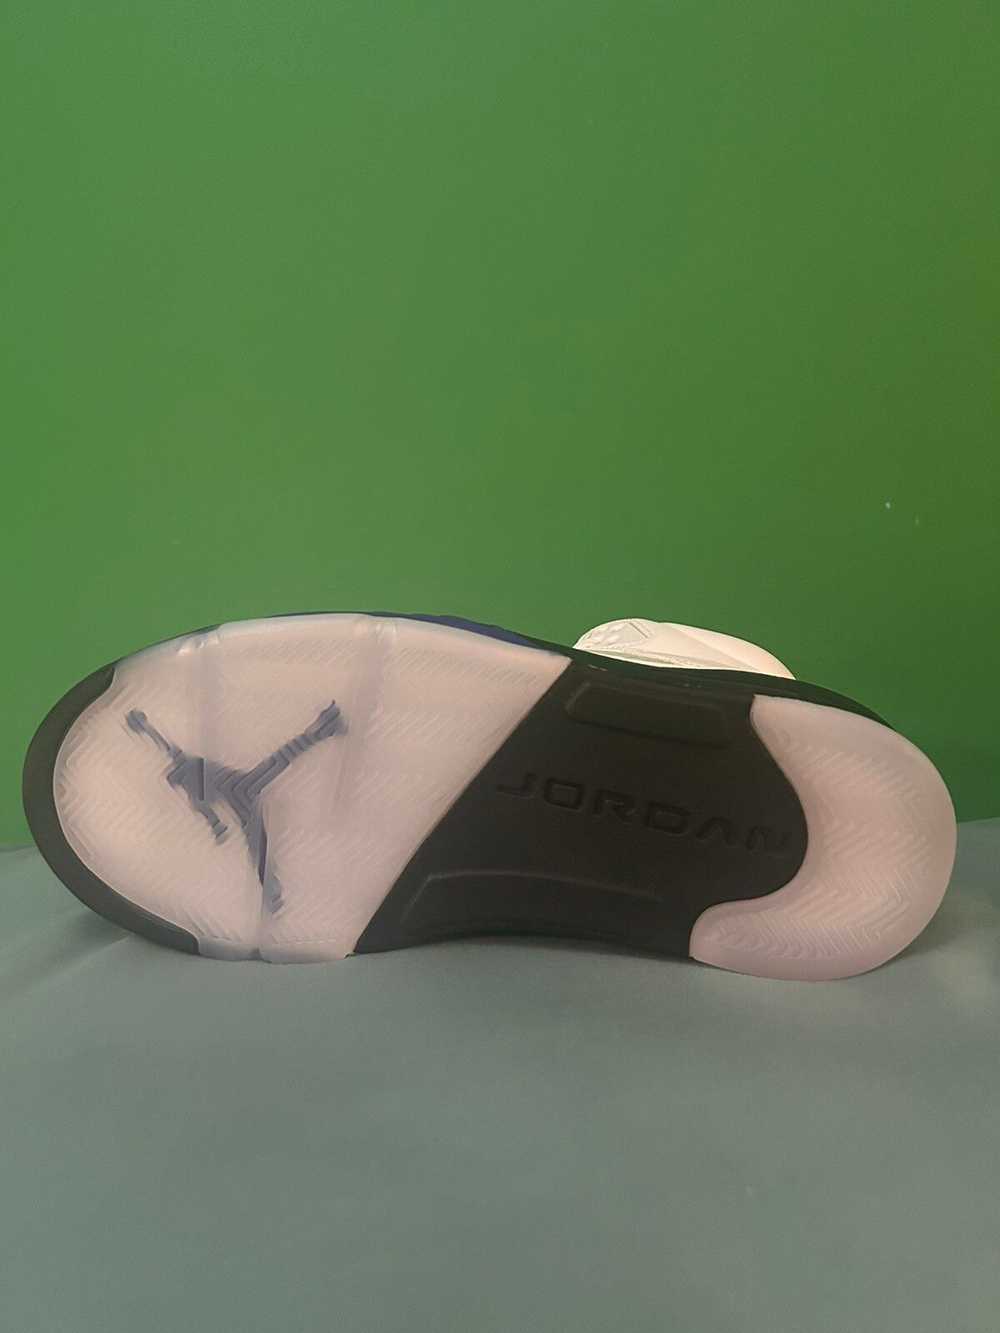 Jordan Brand Nike Air Jordan 5 Dark Concord 2022 - image 4